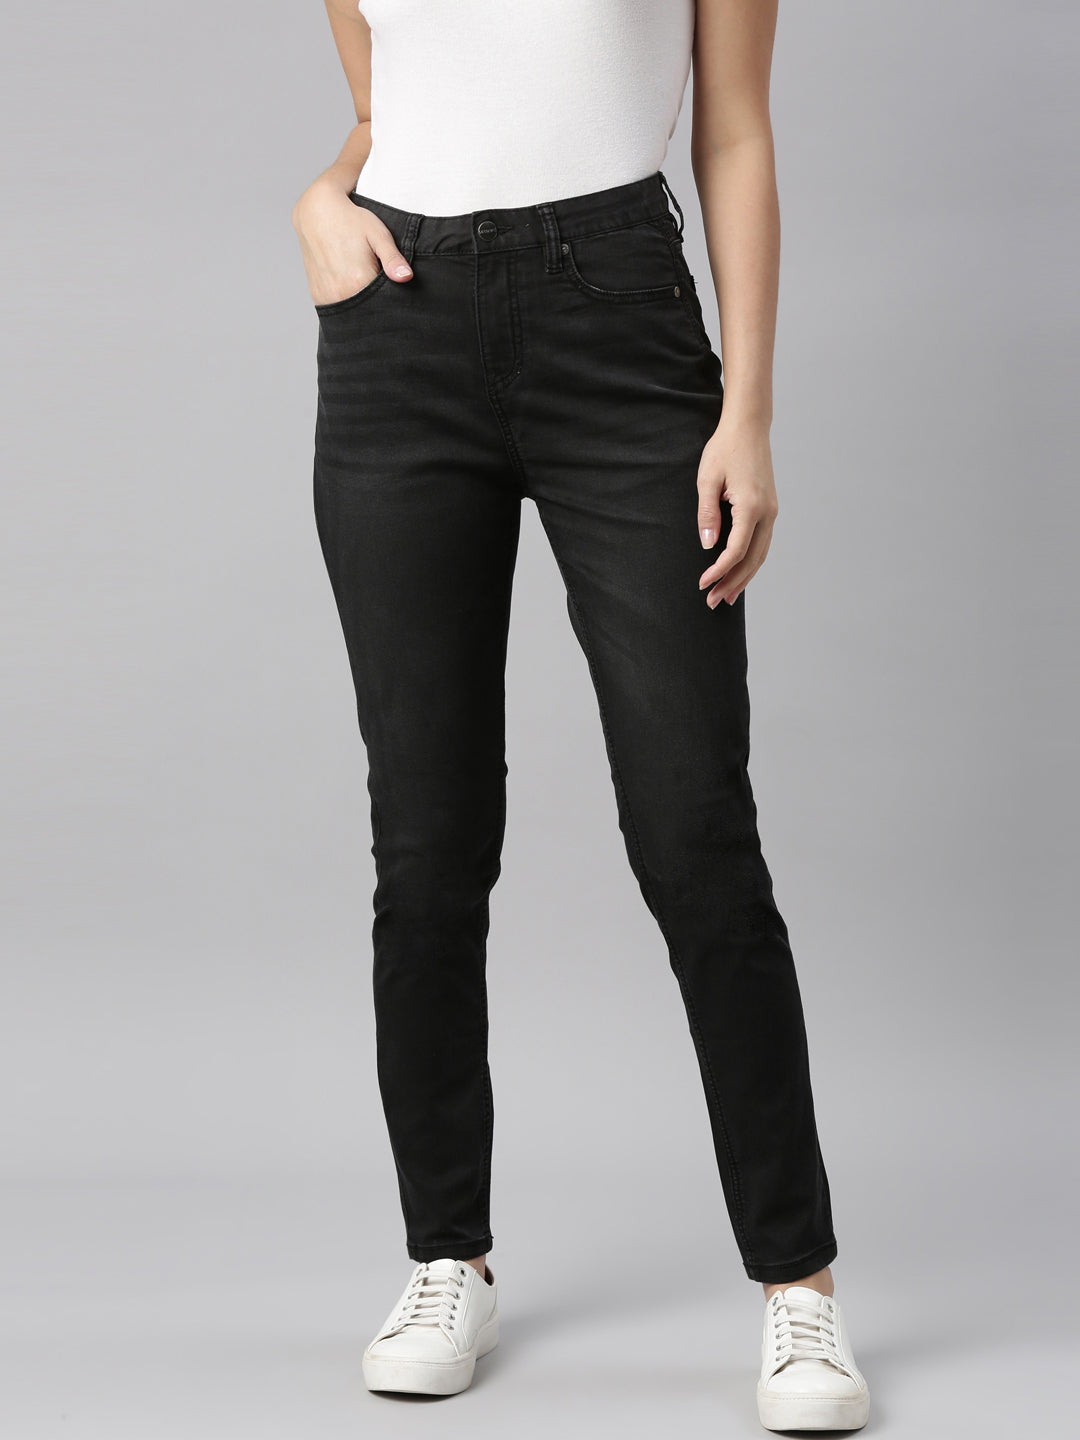 Plus Size Women's Fashion Casual Cargo Pants Side Pockets Skinny Jeans  Denim Long Pants Low Waist Pencil Jeans Slim Fit Leggings(7 Colors)